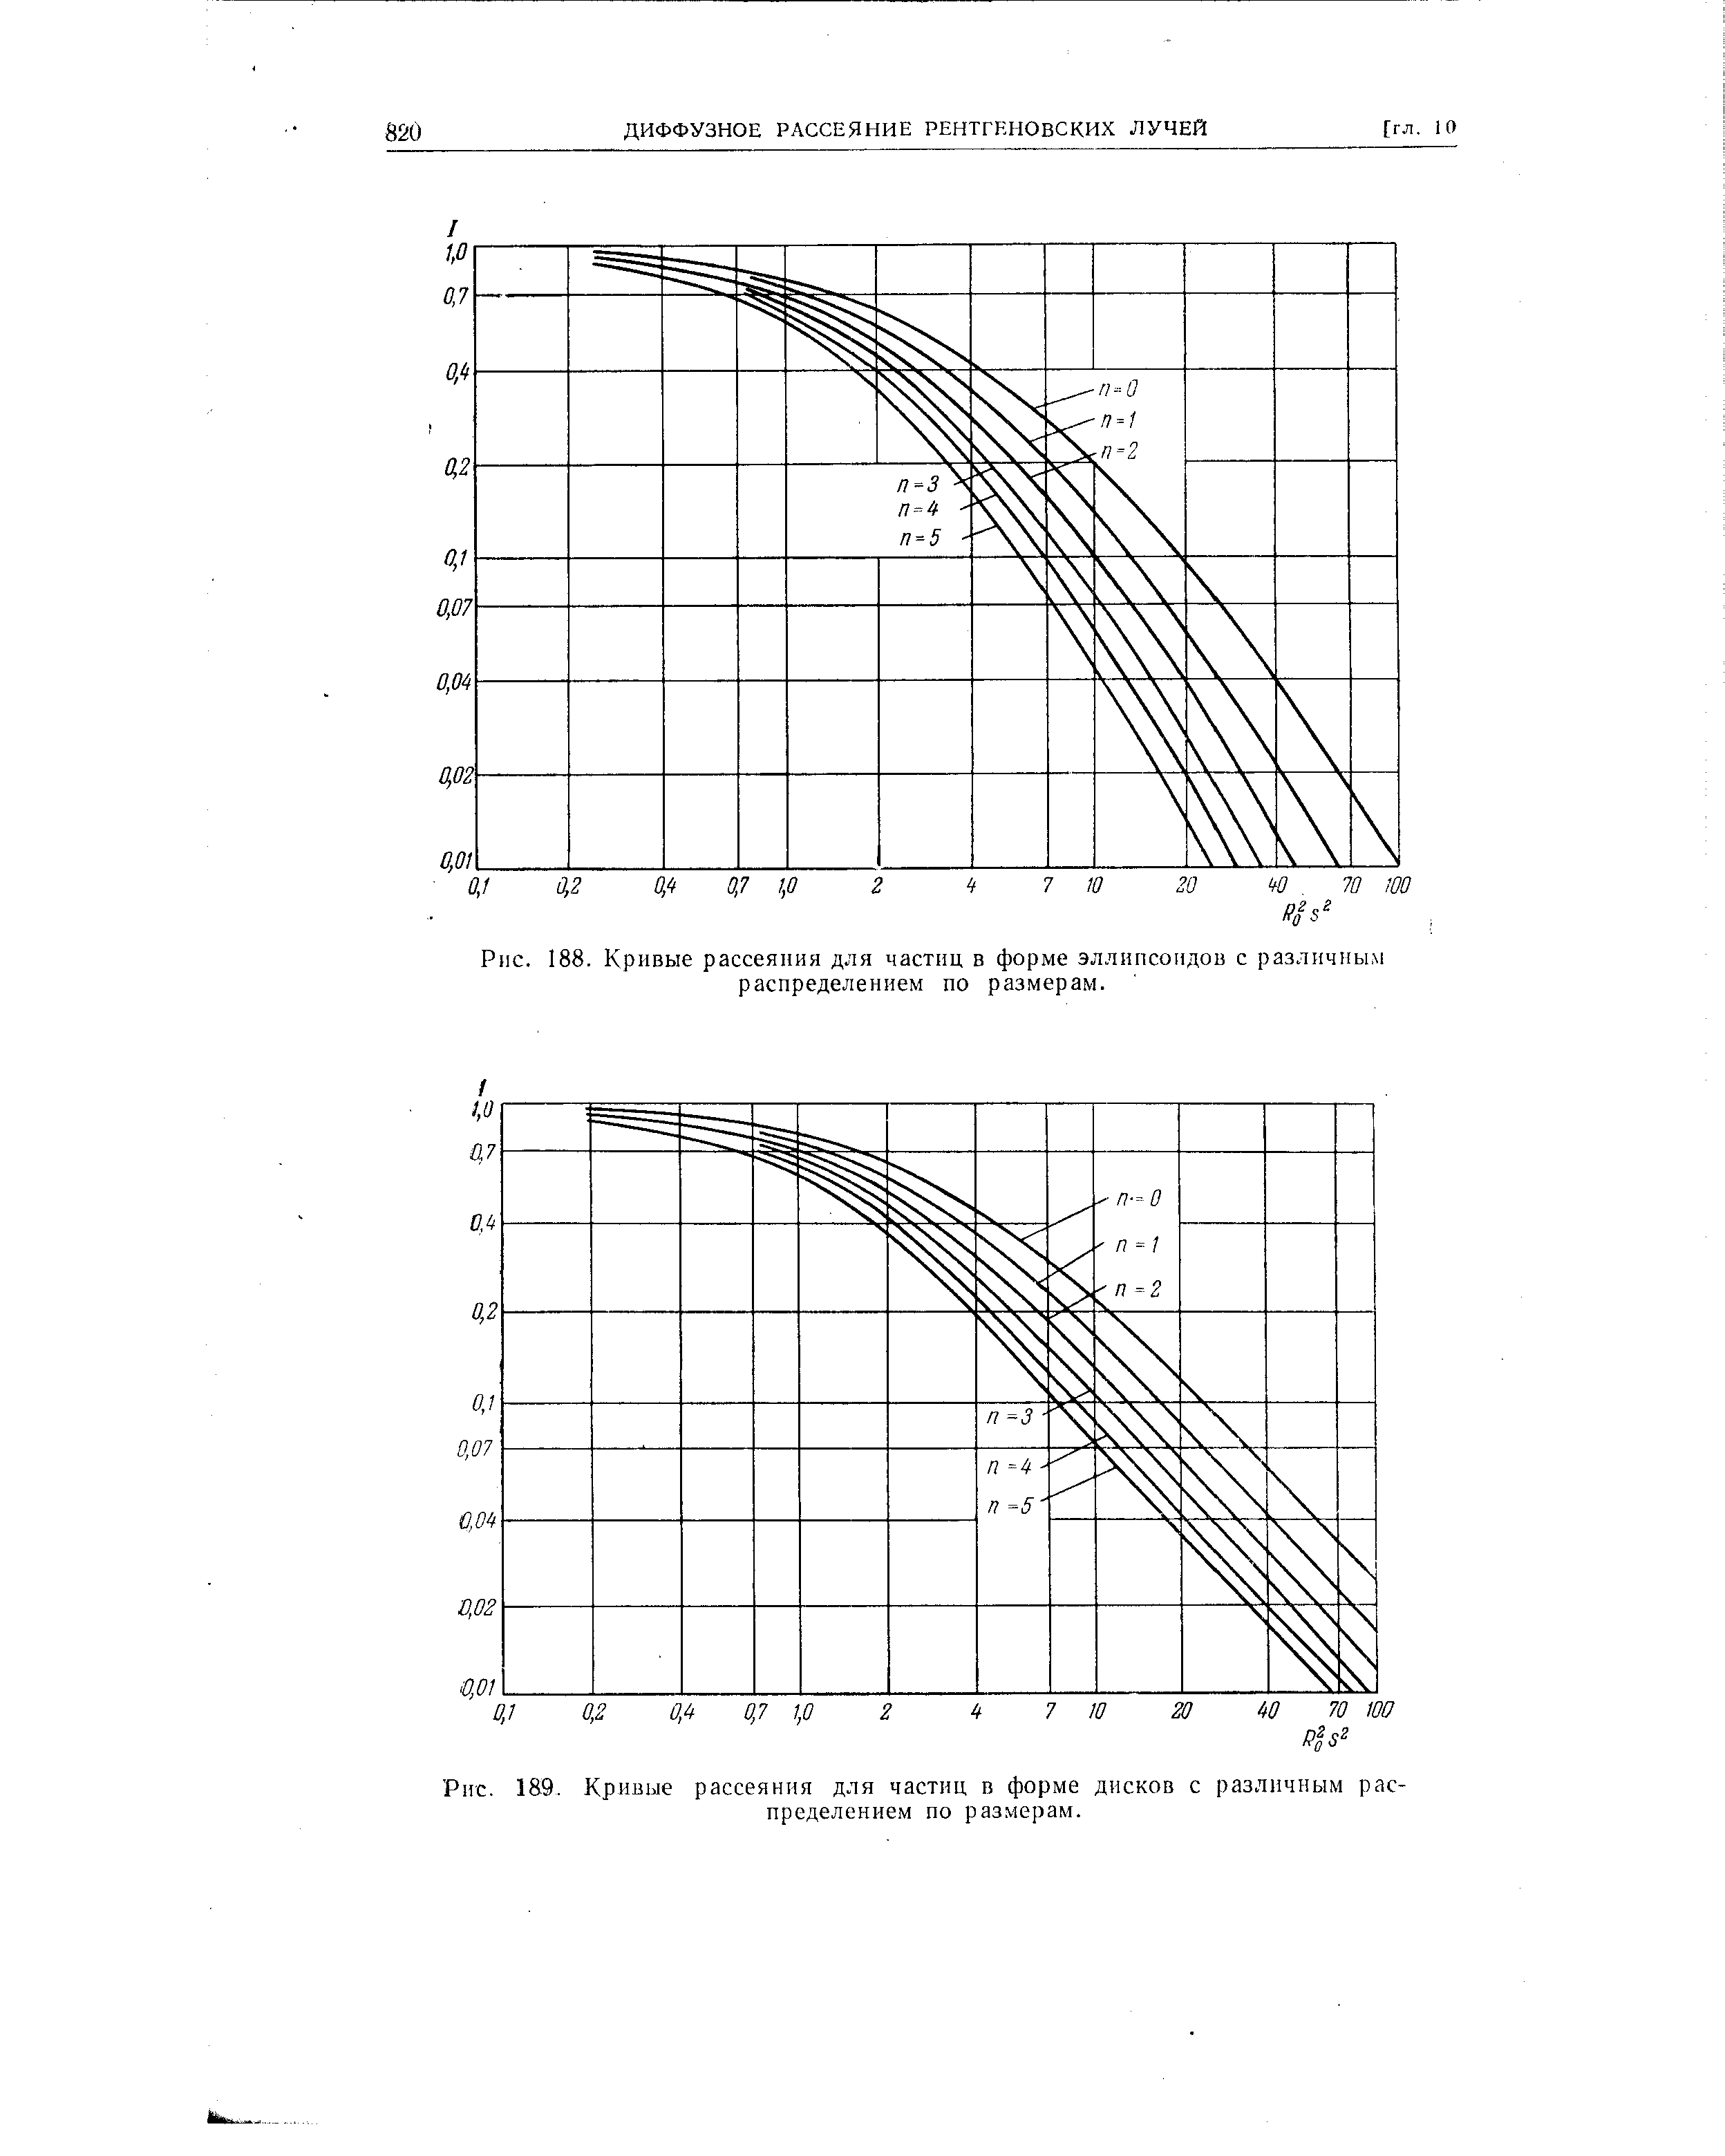 Рис. 189. Кривые рассеяния для частиц в форме дисков с различным распределением по размерам.
